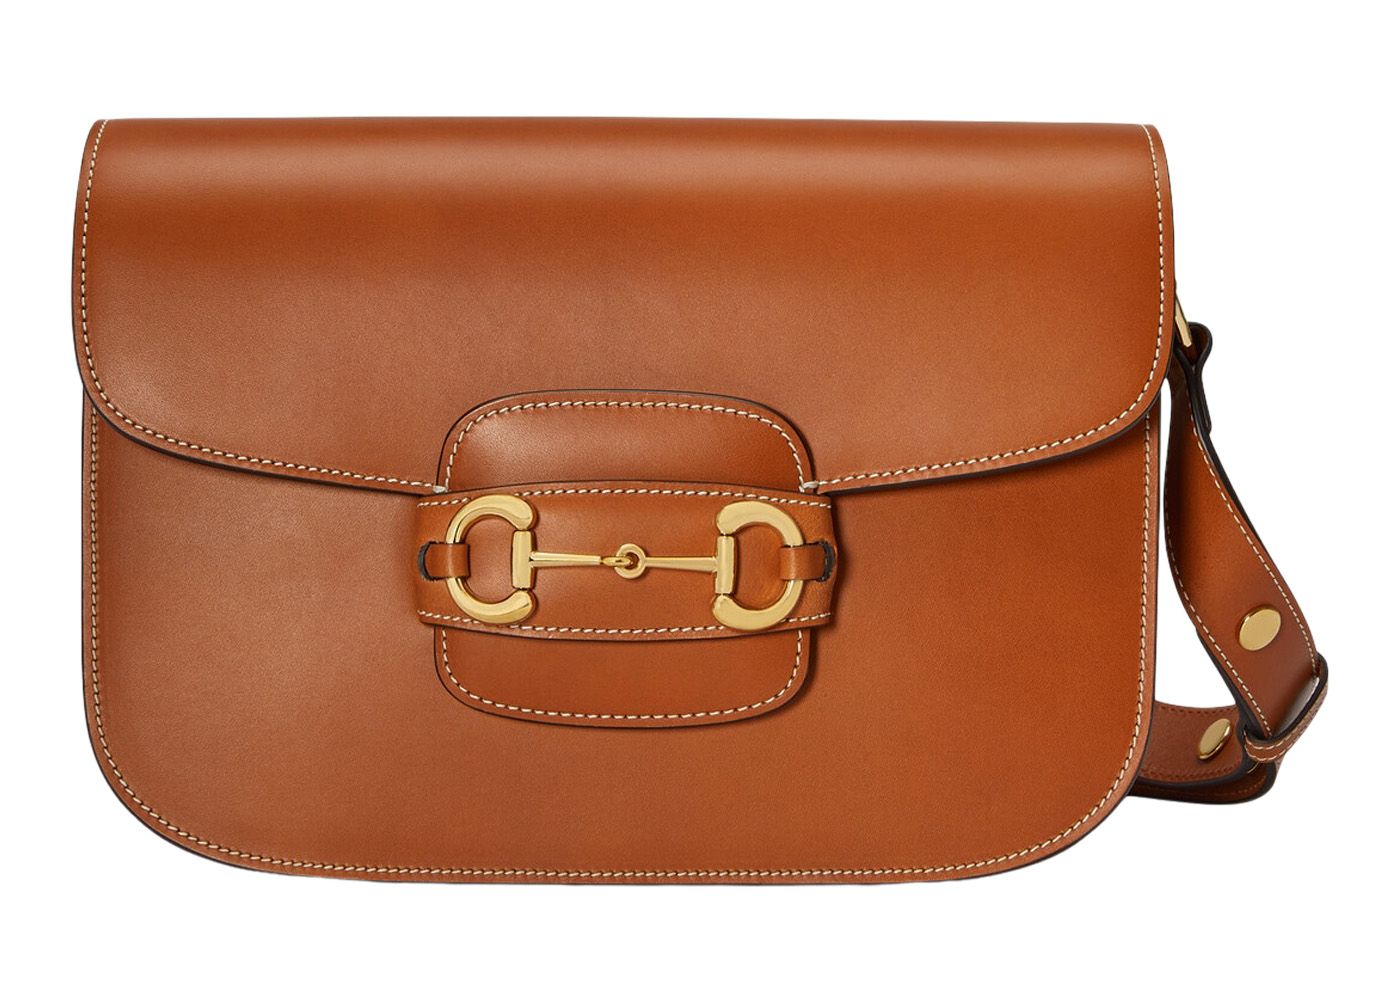 Gucci Horsebit 1955 Shoulder Bag Tan/Brown | StockX